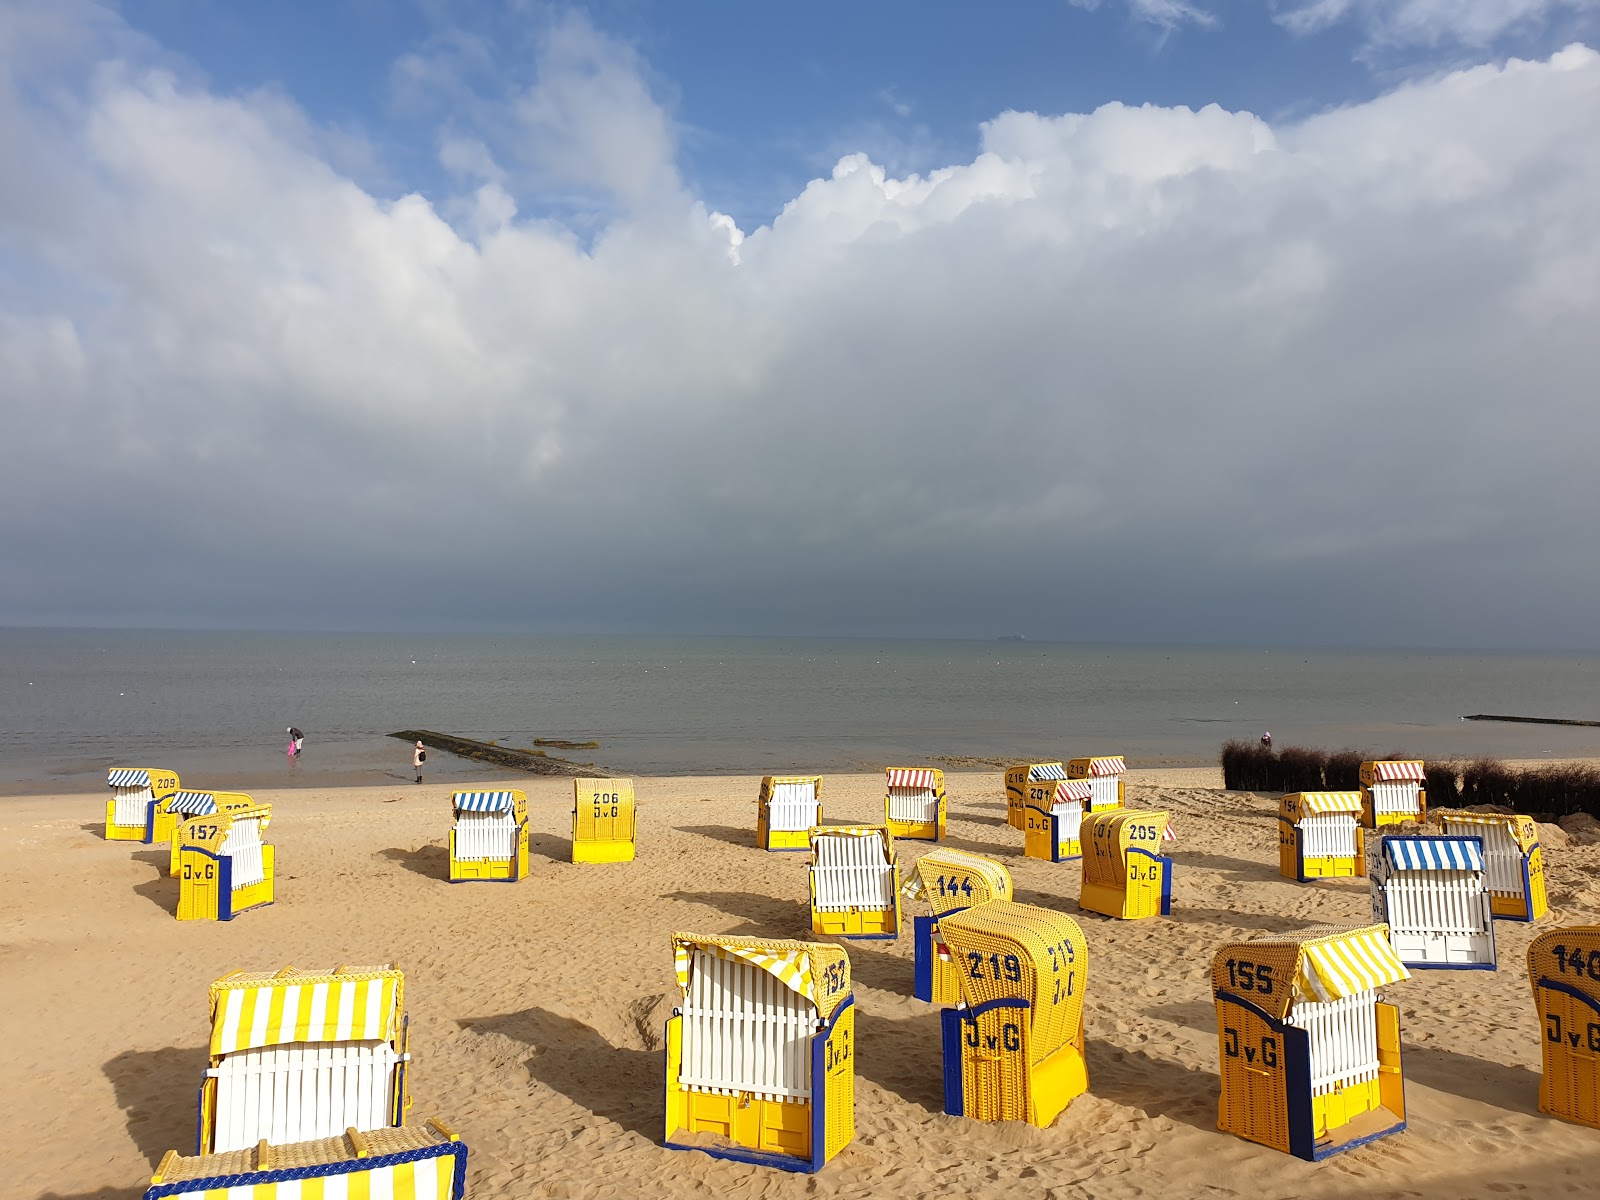 Zdjęcie Plaża Duhnen - popularne miejsce wśród znawców relaksu